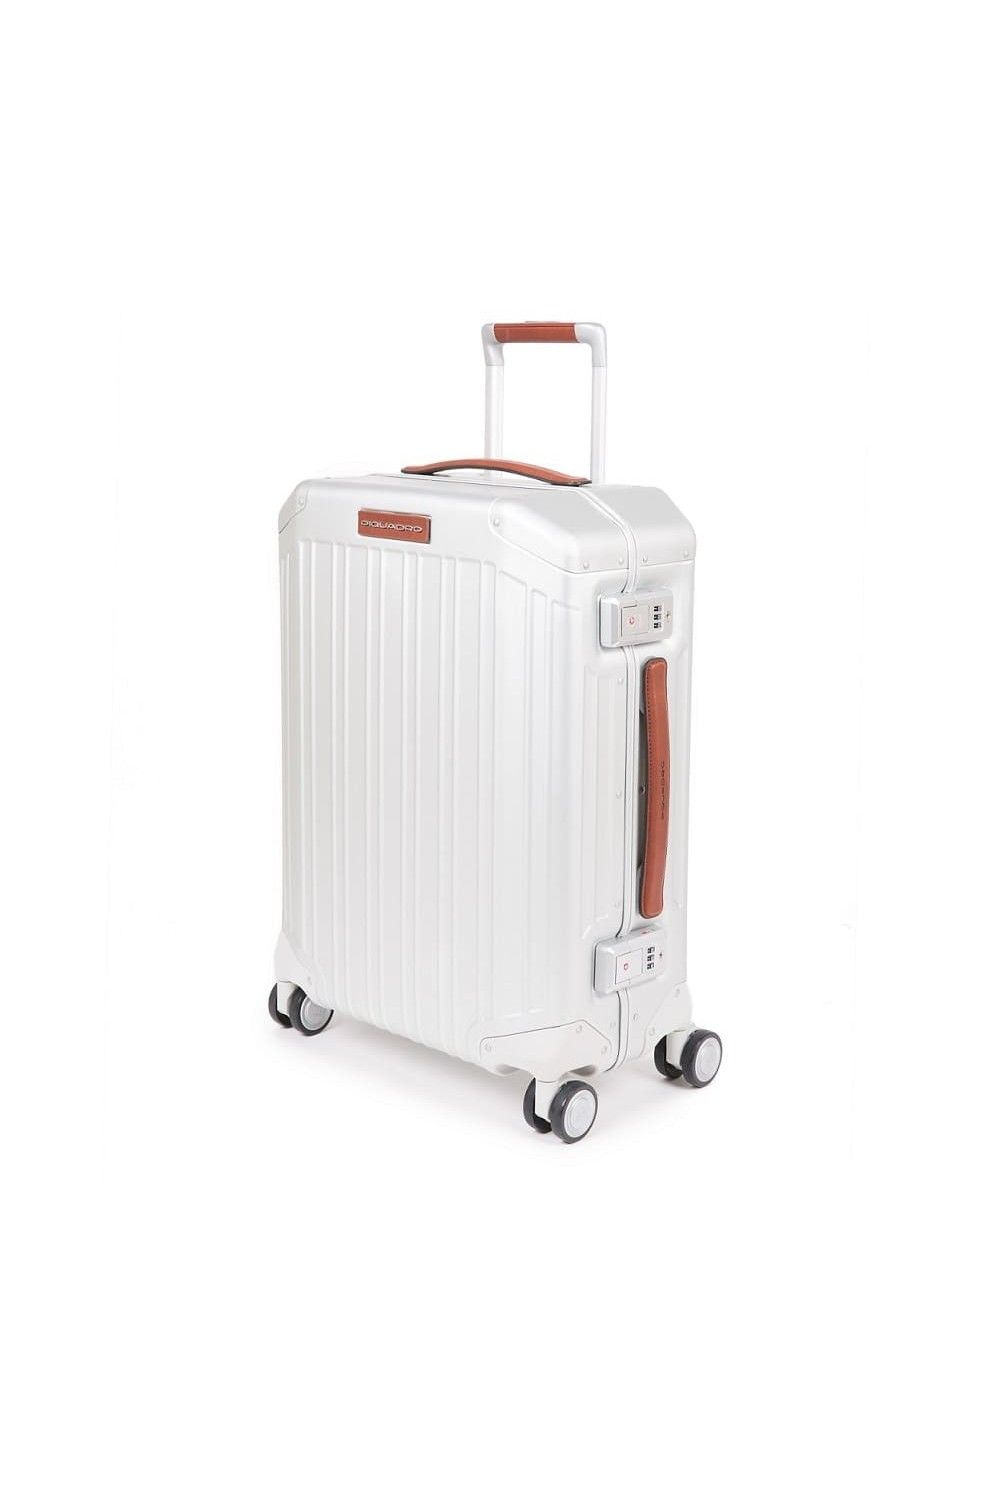 Aluminum case PiQALU Piquadro 55cm 4 wheel hand luggage